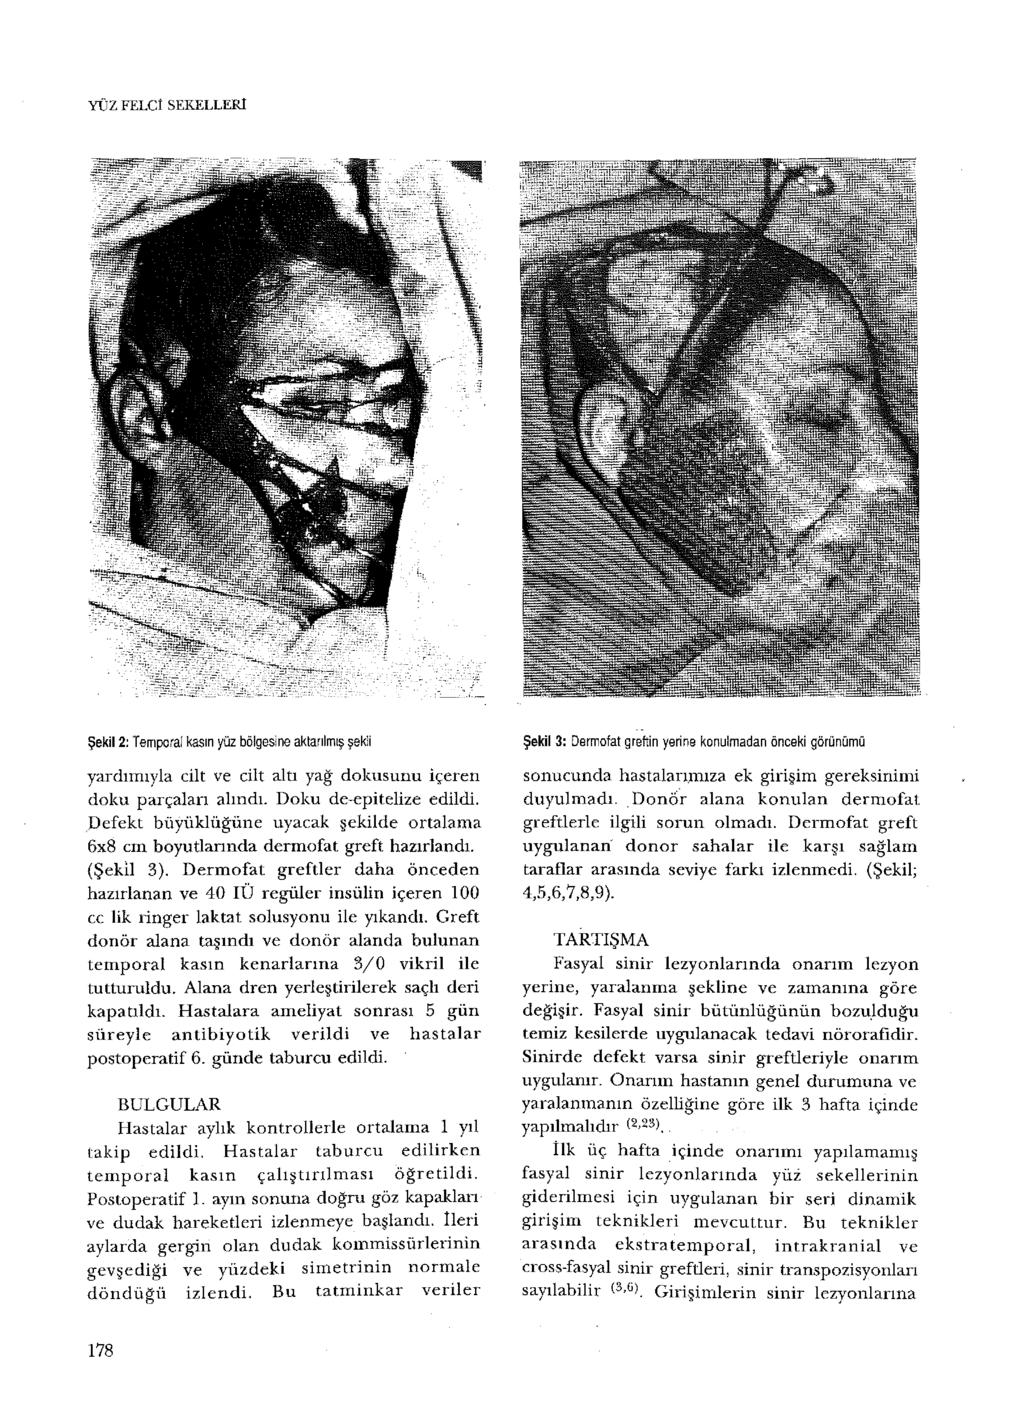 YÜZ FELCİ SEKELLERl Şekil 2: Temporal kasın yüz bölgesine aktarılmış şekli yardımıyla cilt ve cilt altı yağ dokusunu içeren doku parçalan alındı. Doku de-epitelize edildi.